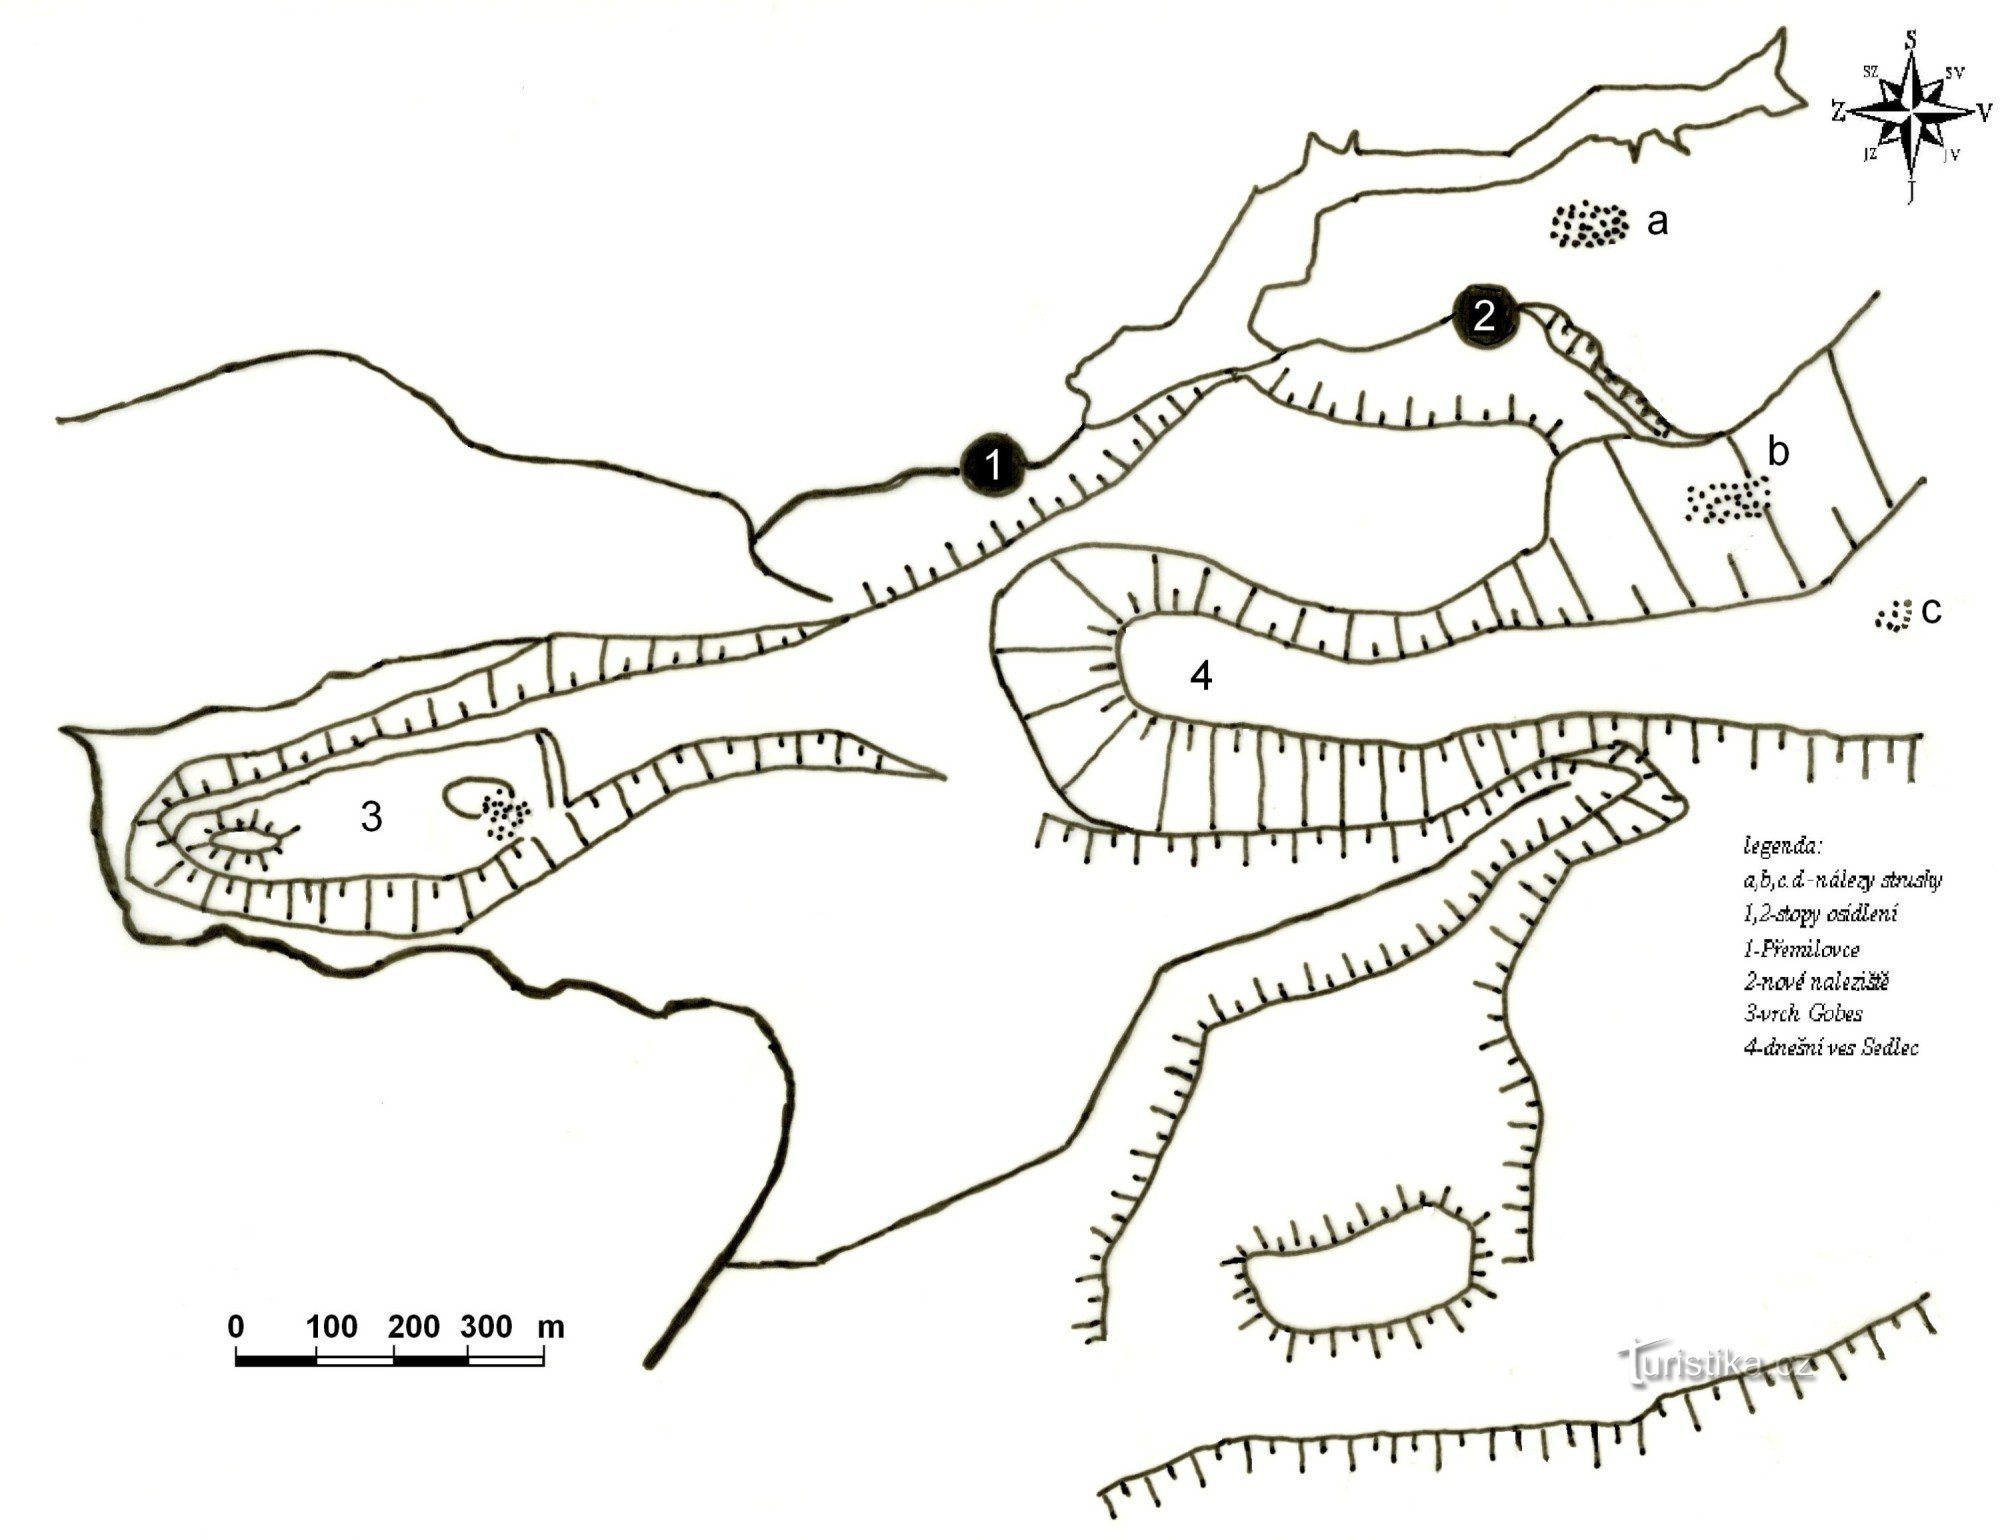 vlevo vrch Gobes, point 1 - Přemilovice, point 2 - lokalita s raně středověkými 